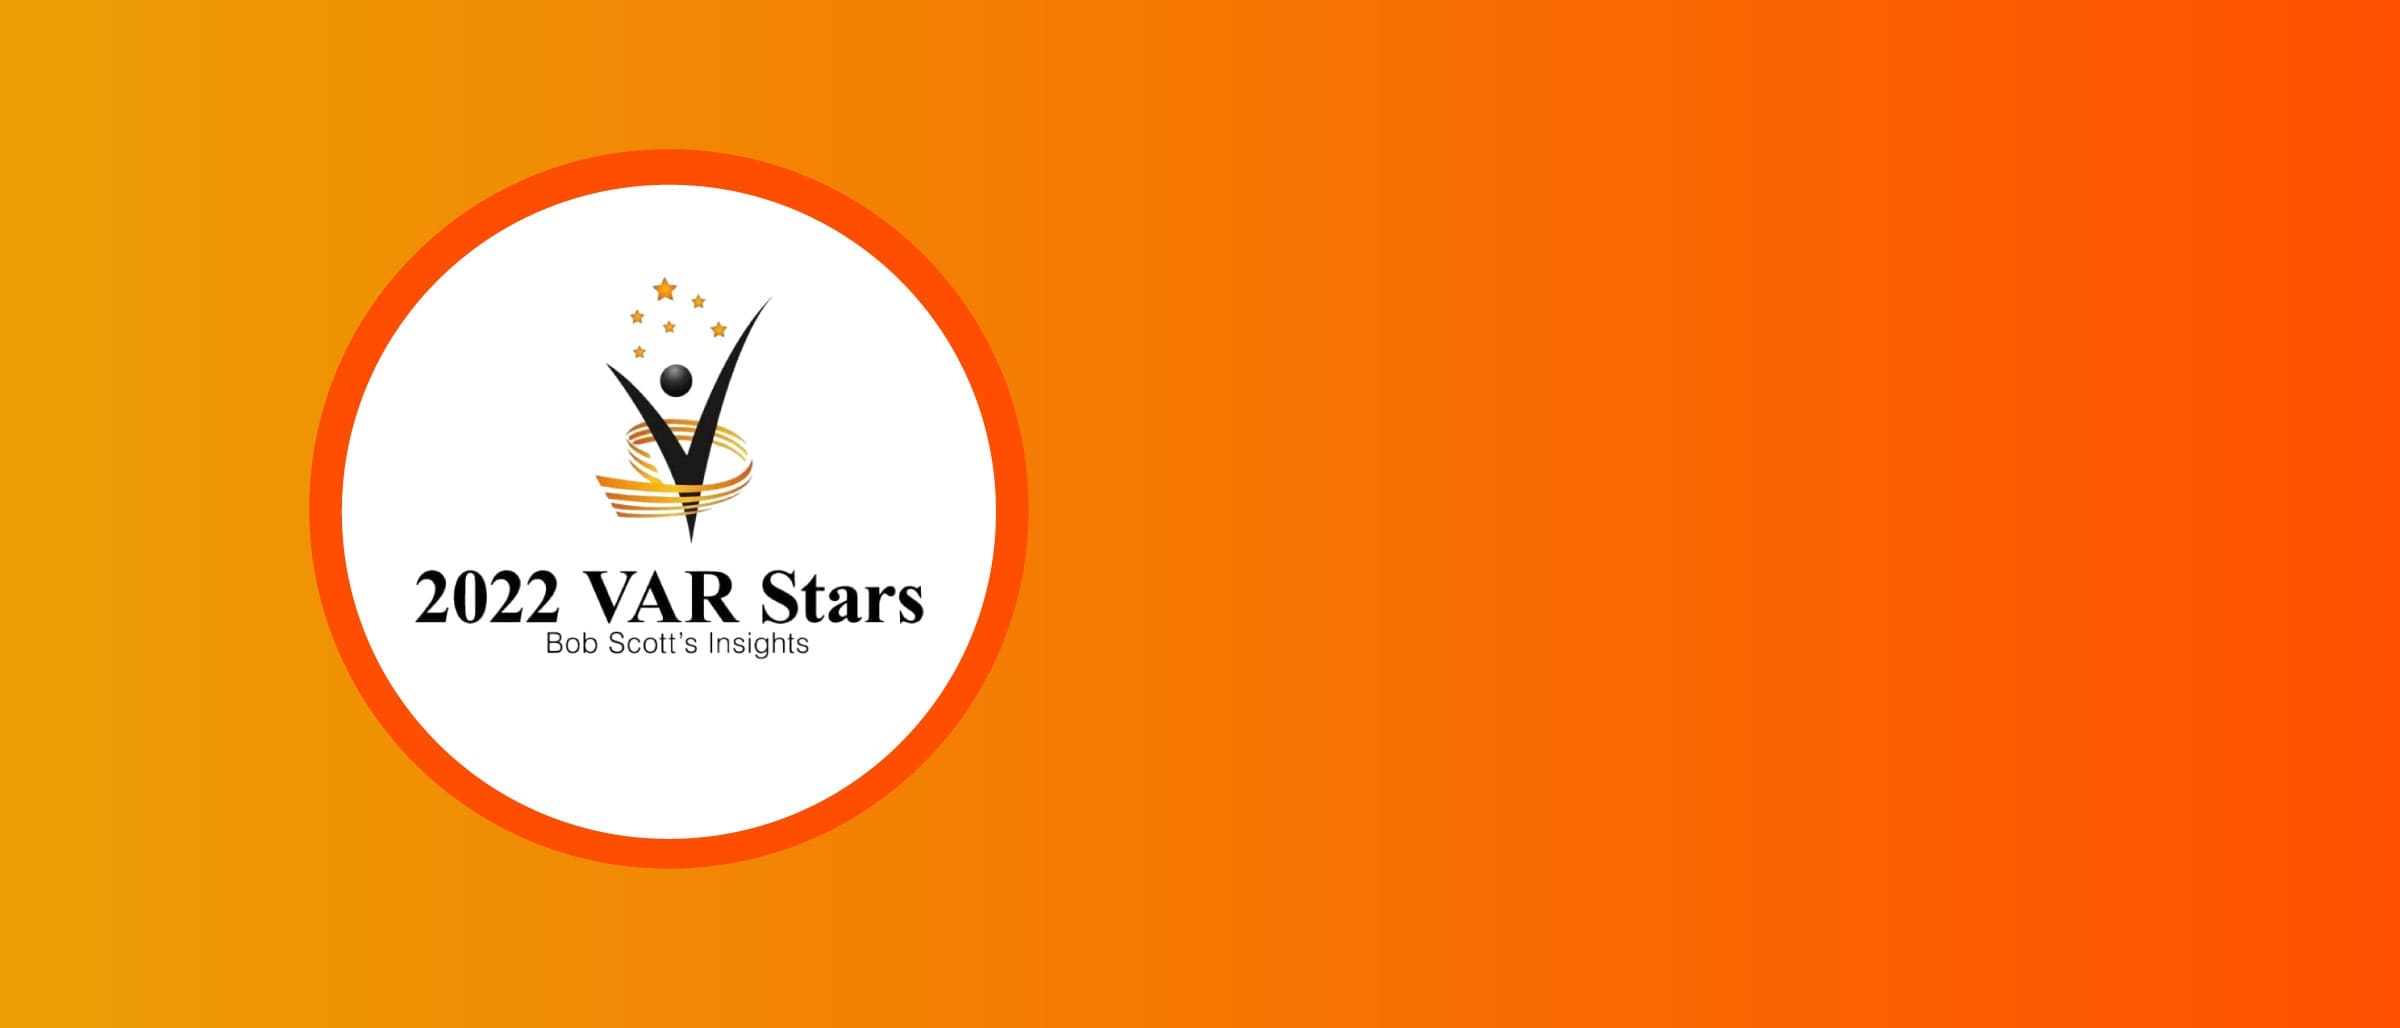 VARStars award logo with orange background